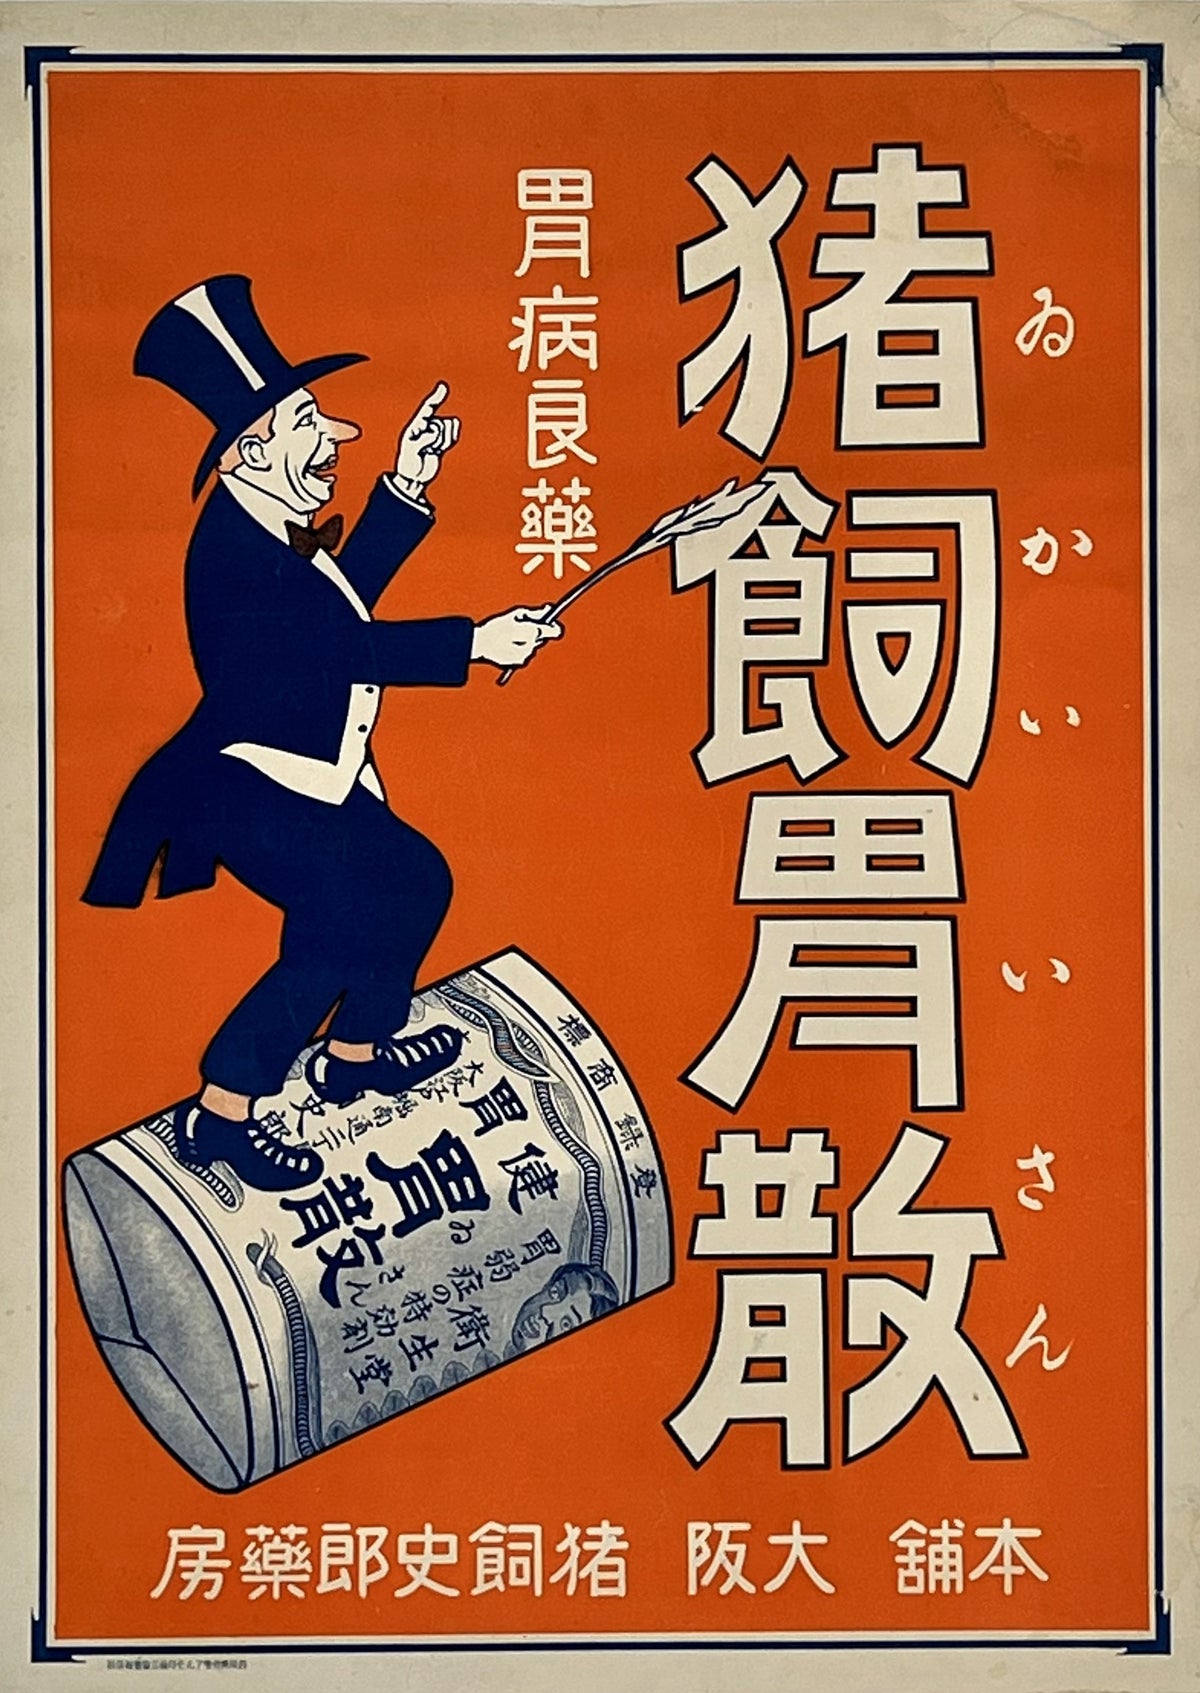 Gastrosan - Authentic Vintage Poster